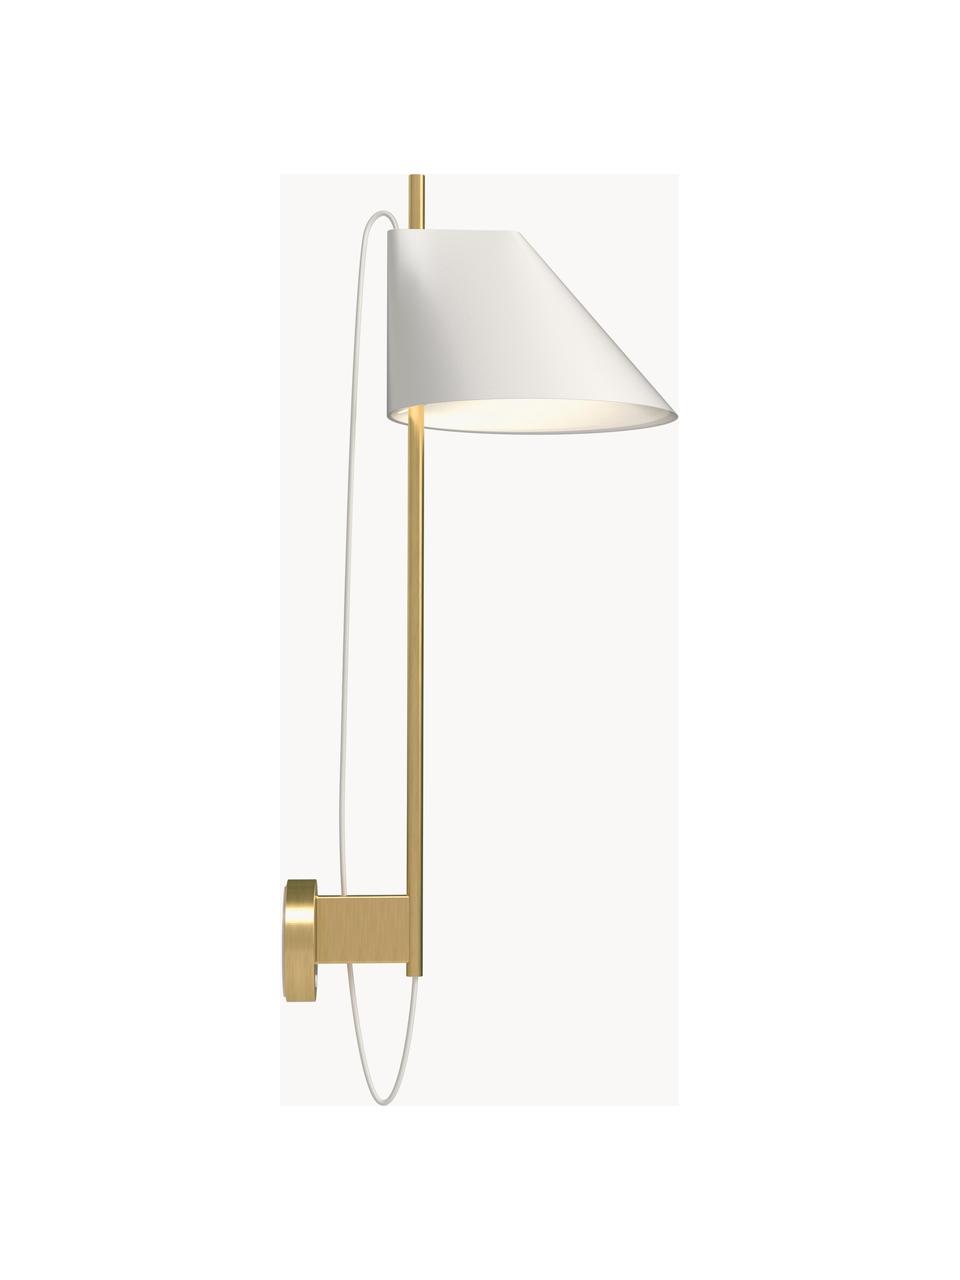 Kinkiet LED z funkcją przyciemniania Yuh, Stelaż: mosiądz szczotkowany, Biały, mosiężny, S 30 x W 63 cm